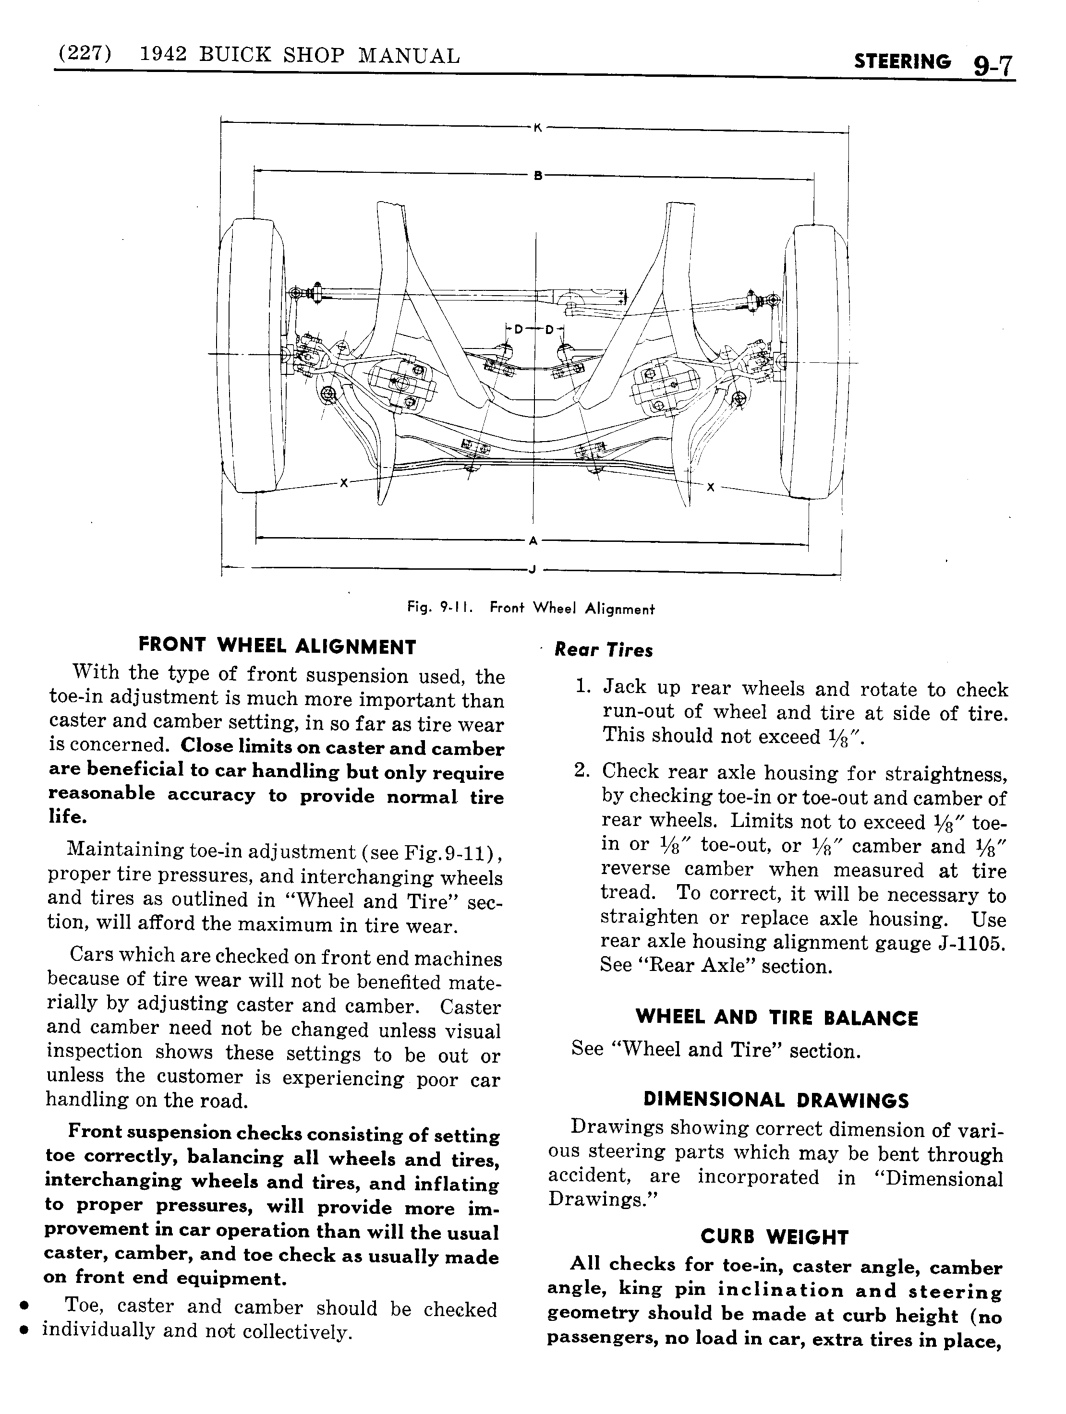 n_10 1942 Buick Shop Manual - Steering-007-007.jpg